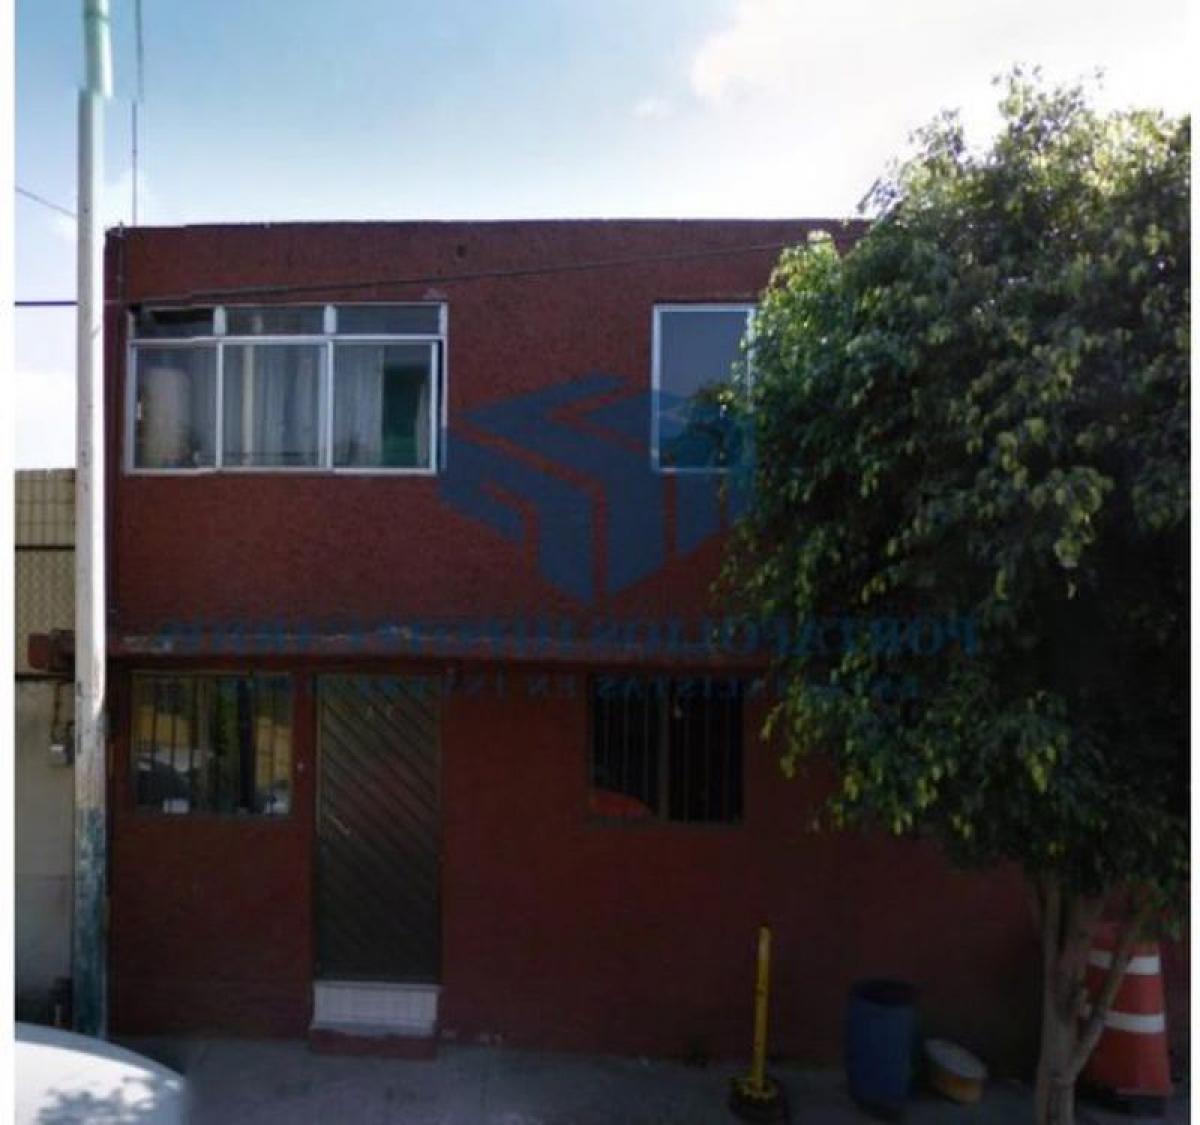 Picture of Home For Sale in Cochoapa El Grande, Guerrero, Mexico